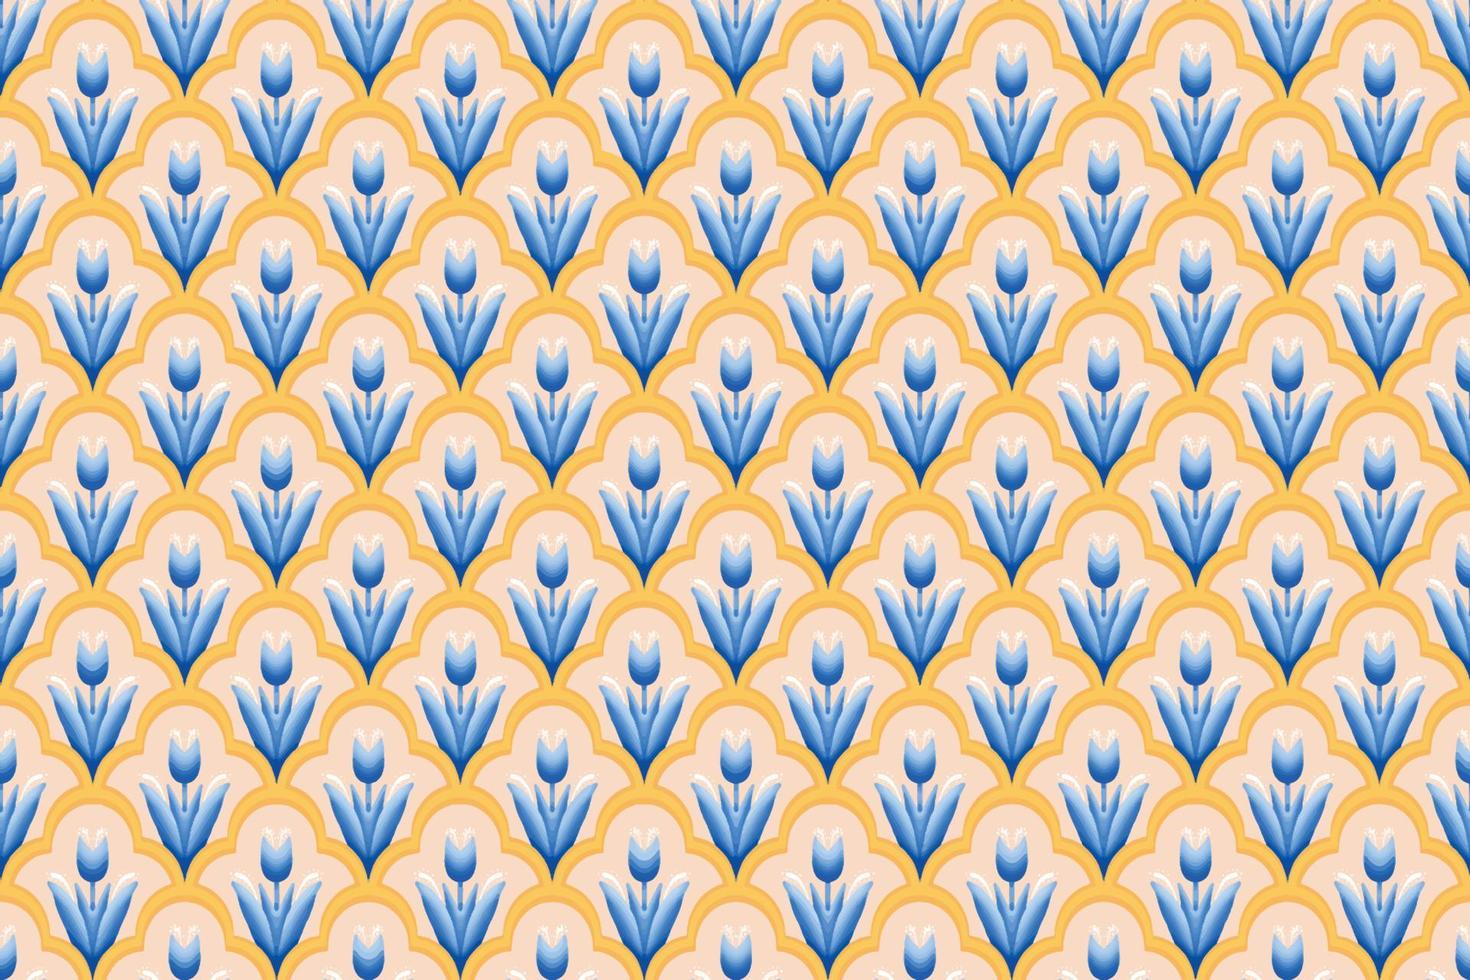 flor azul sobre marfil, blanco, amarillo patrón geométrico étnico oriental diseño tradicional para fondo, alfombra, papel pintado, ropa, envoltura, batik, tela, estilo de bordado de ilustración vectorial vector